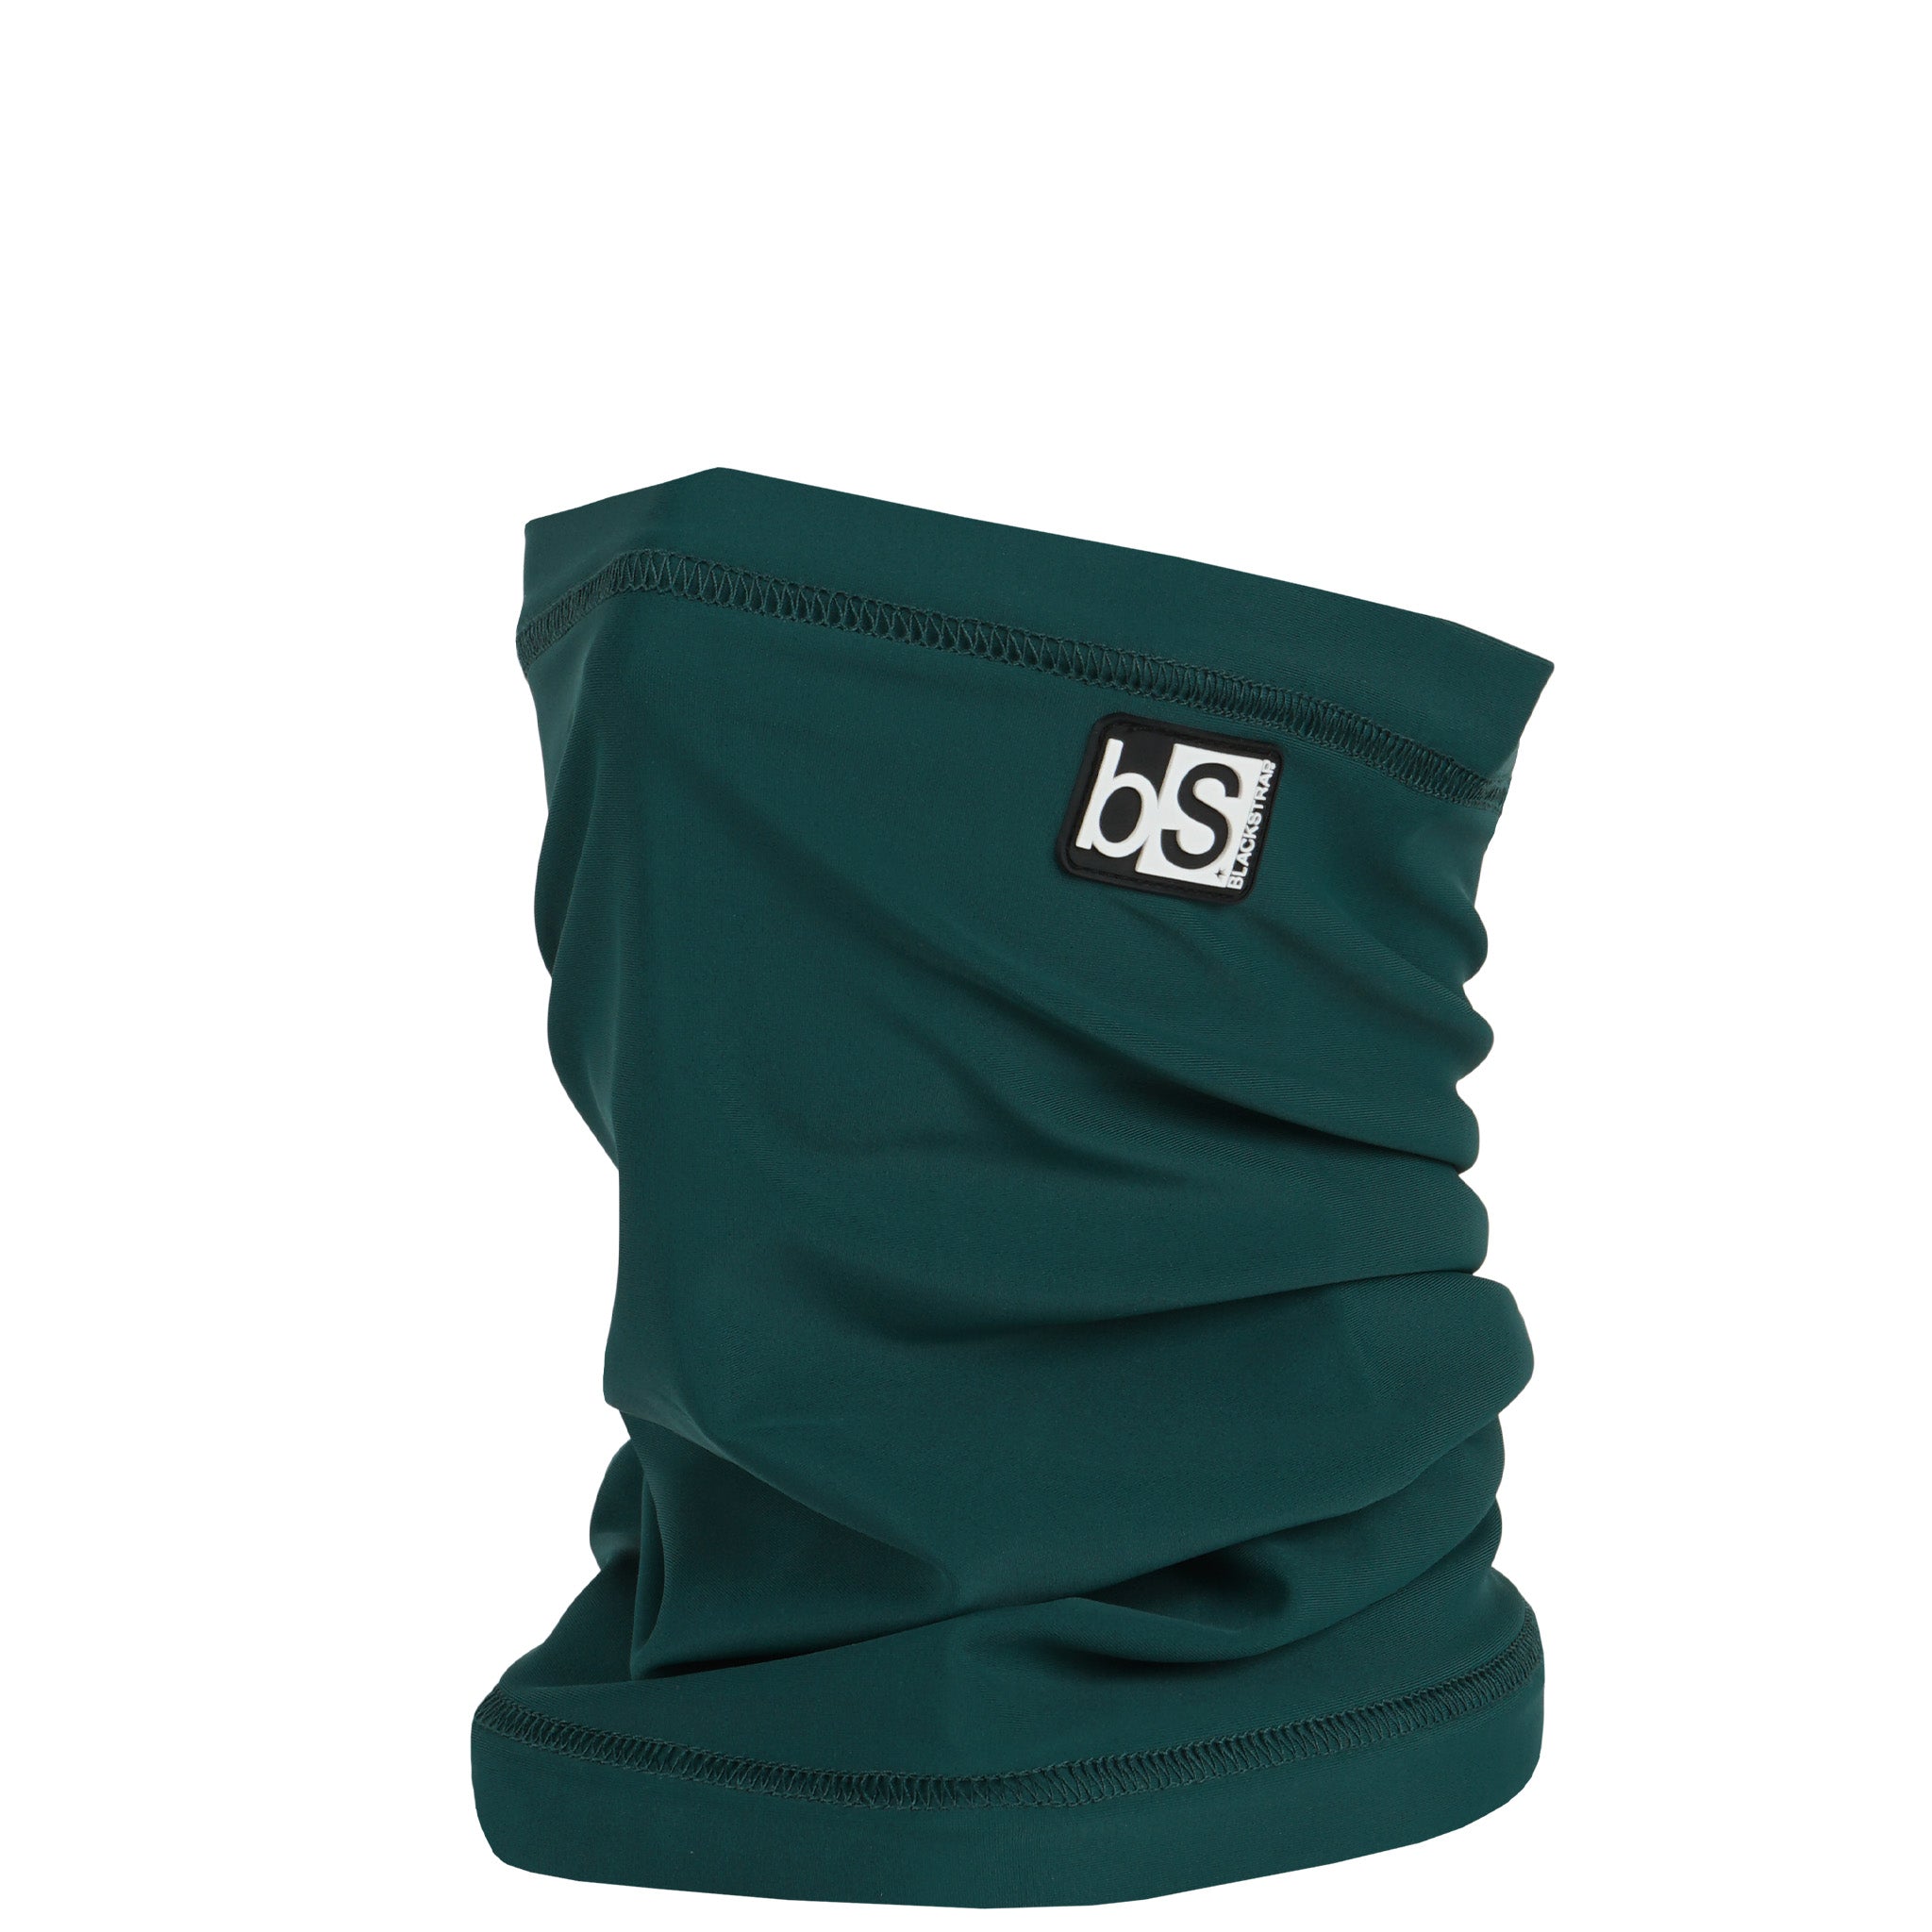 Dual Layer Tube Neck Warmer | Solids Blackstrap Emerald #color_emerald